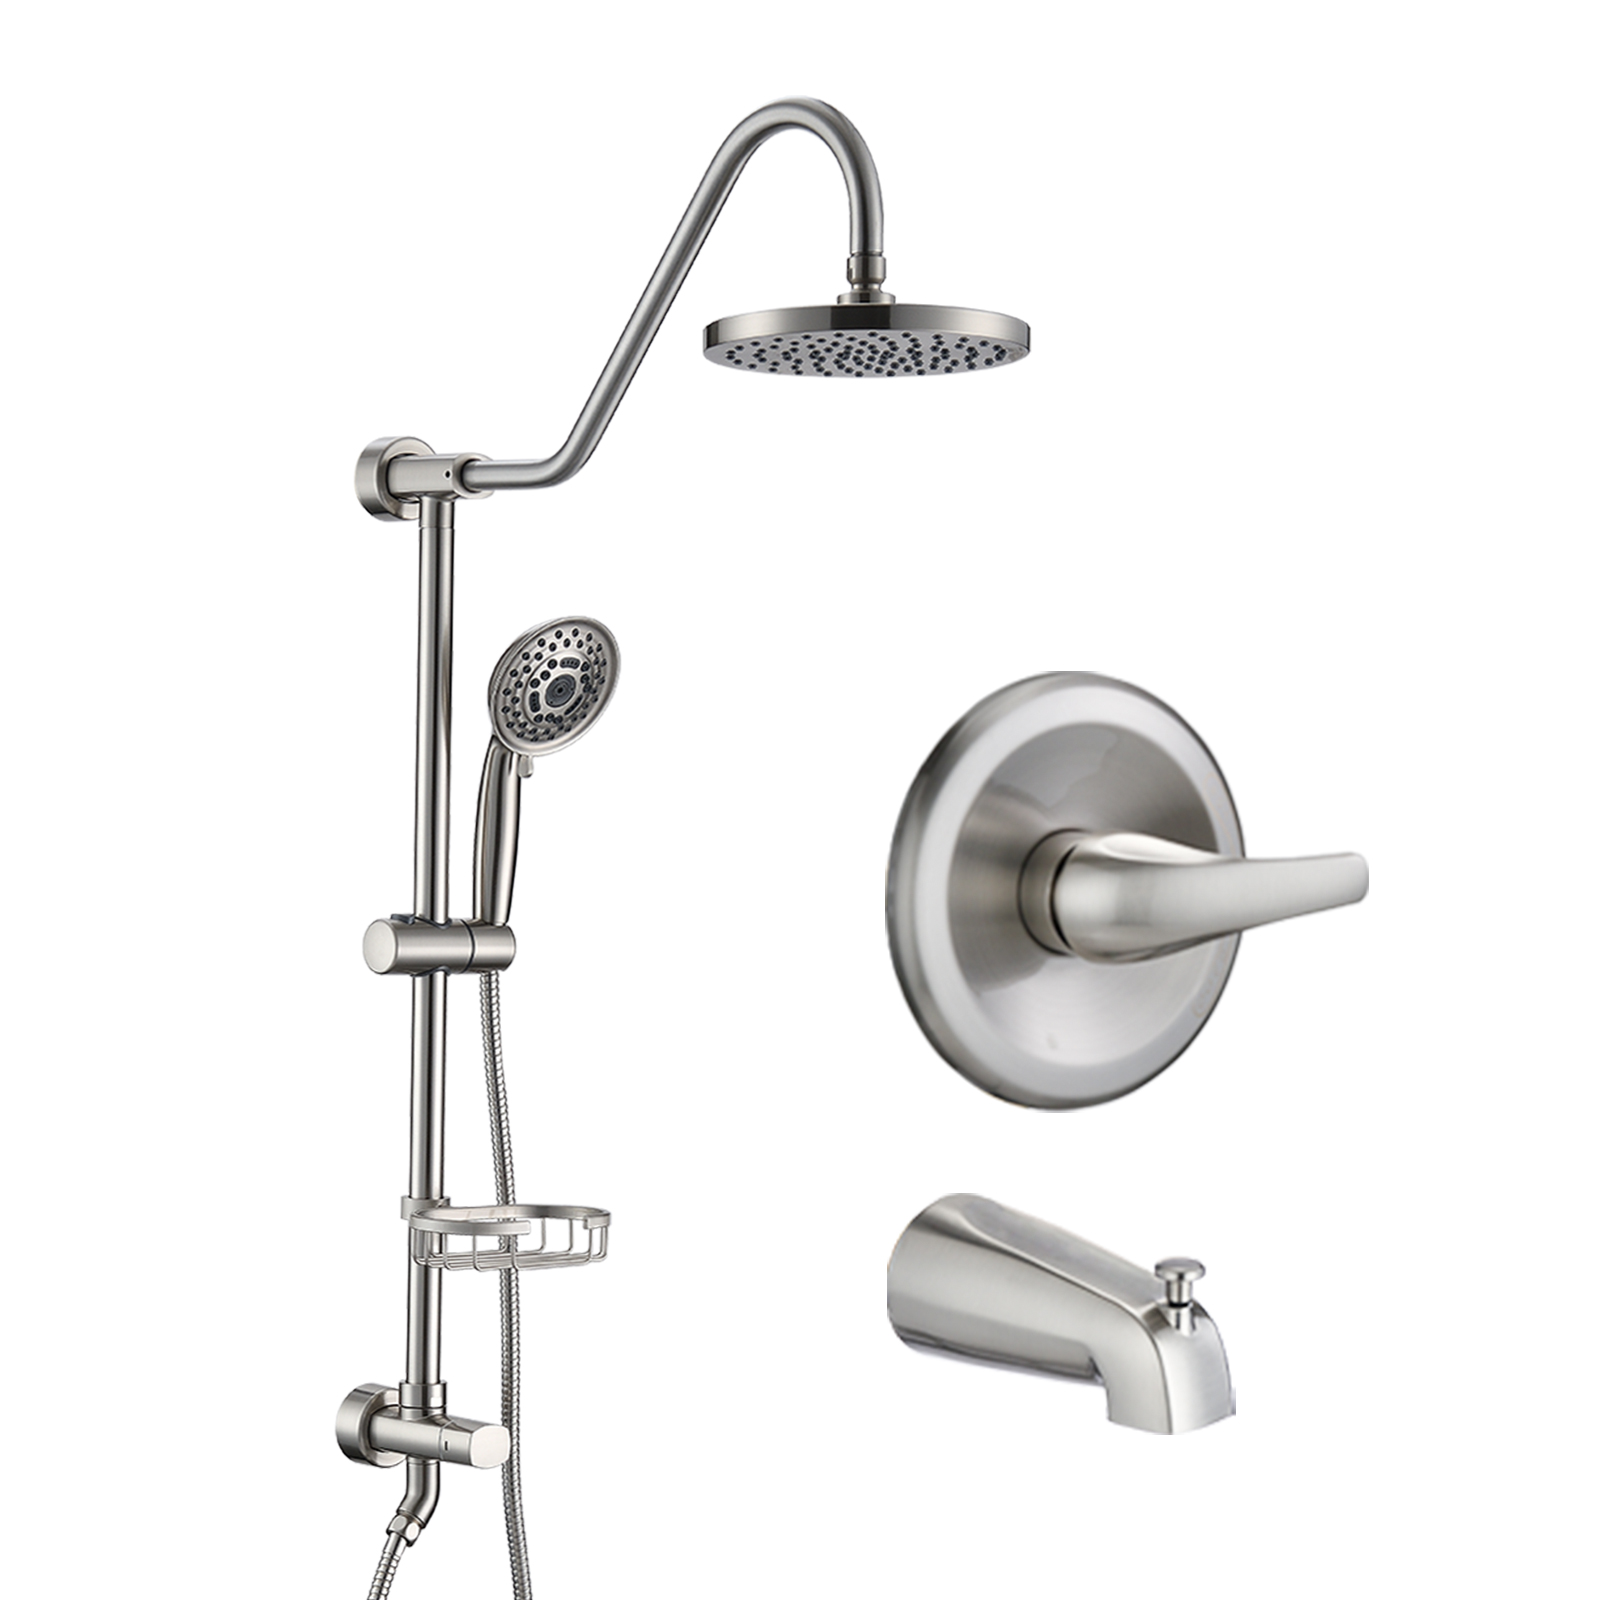 Shower system, 8 inch shower head, handheld 5 function shower head, adjustable slide bar, brushed nickel-Boyel Living